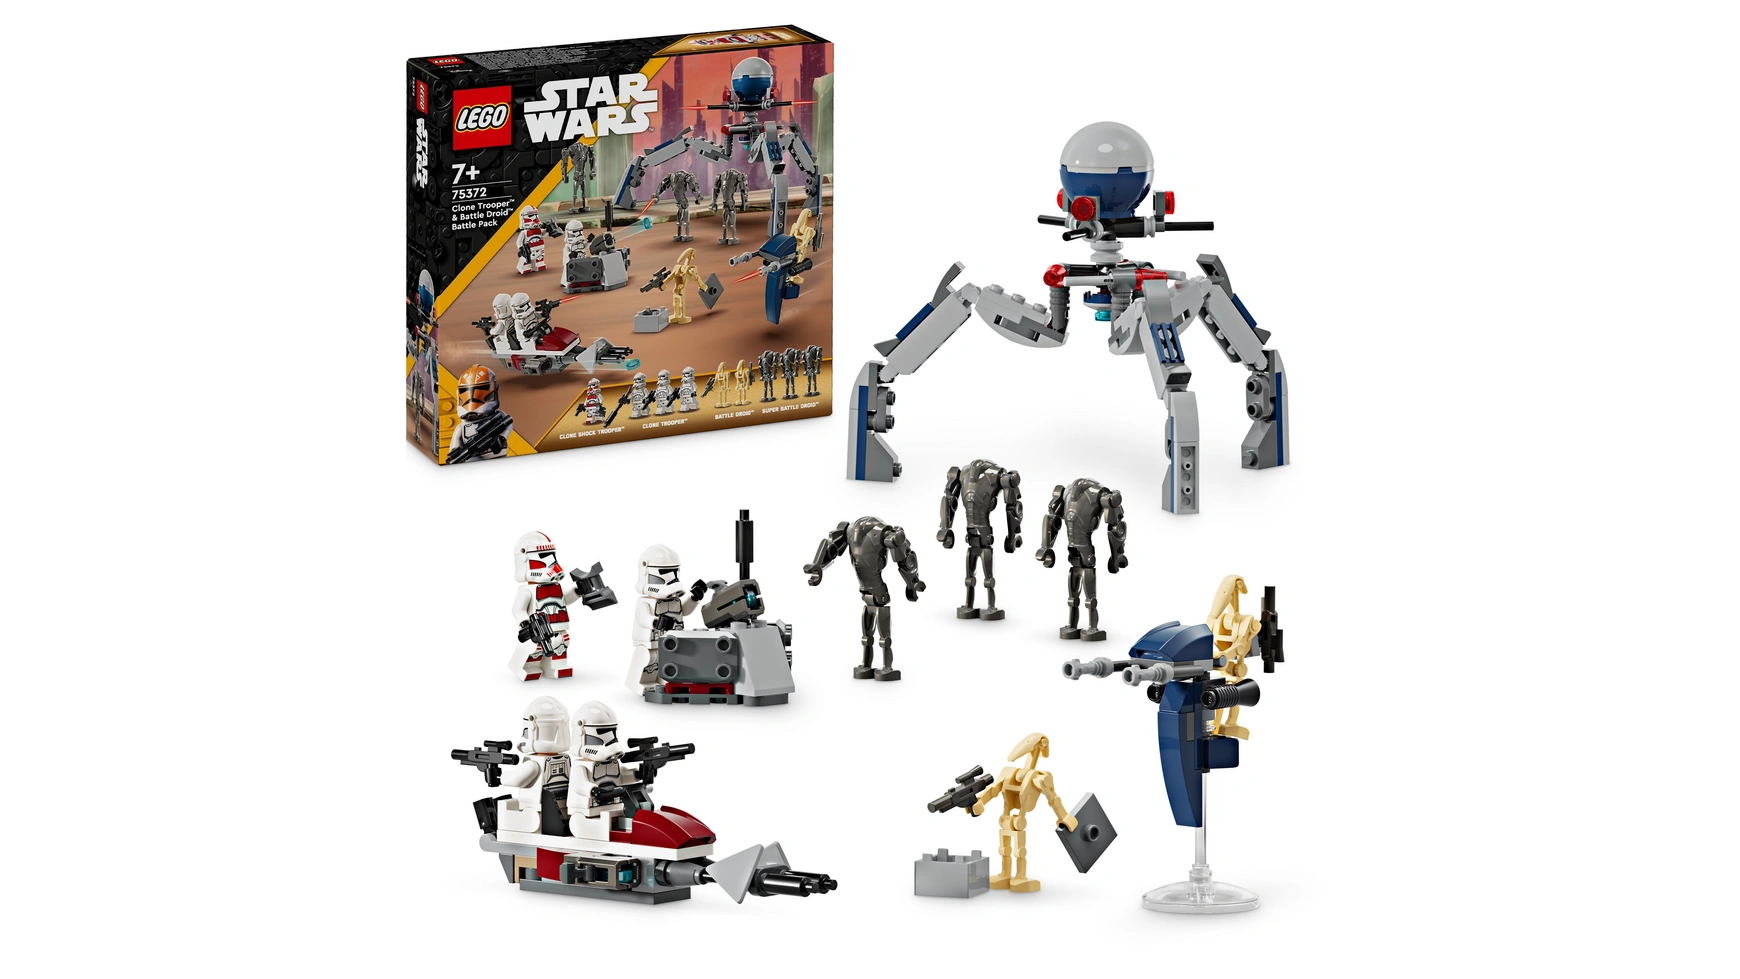 Lego Star Wars Набор Боевой набор клонов-солдат и боевых дроидов